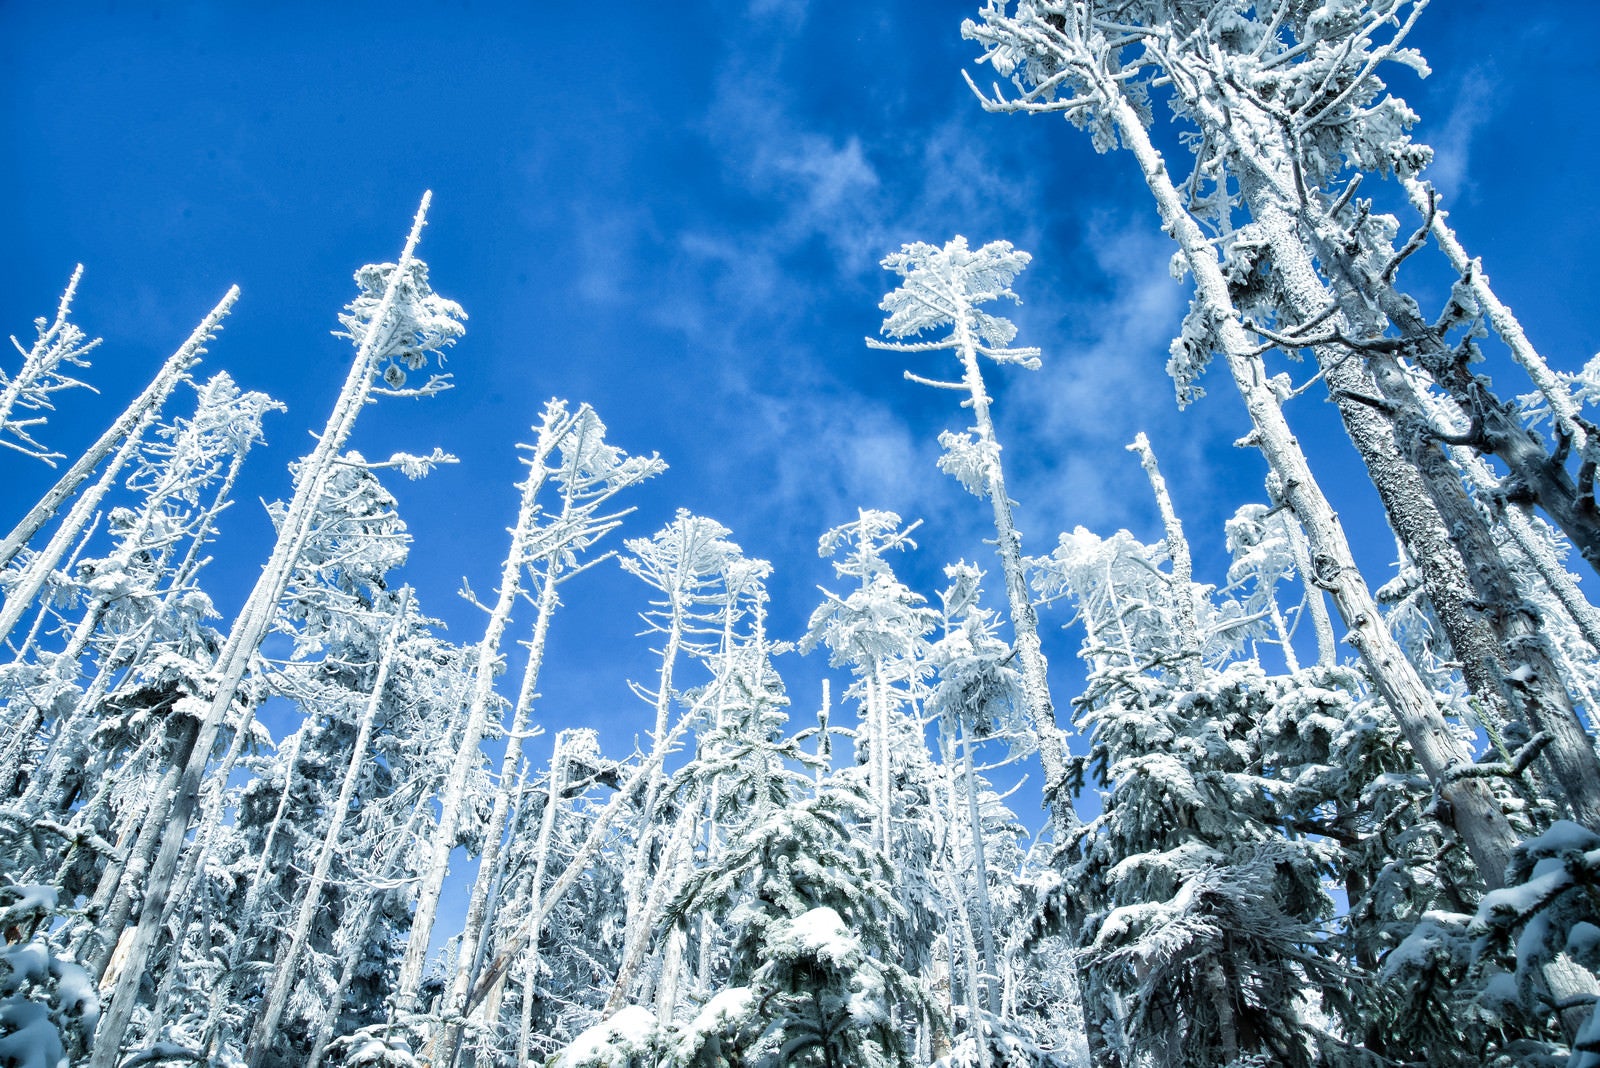 「屹立する樹氷と青空」の写真